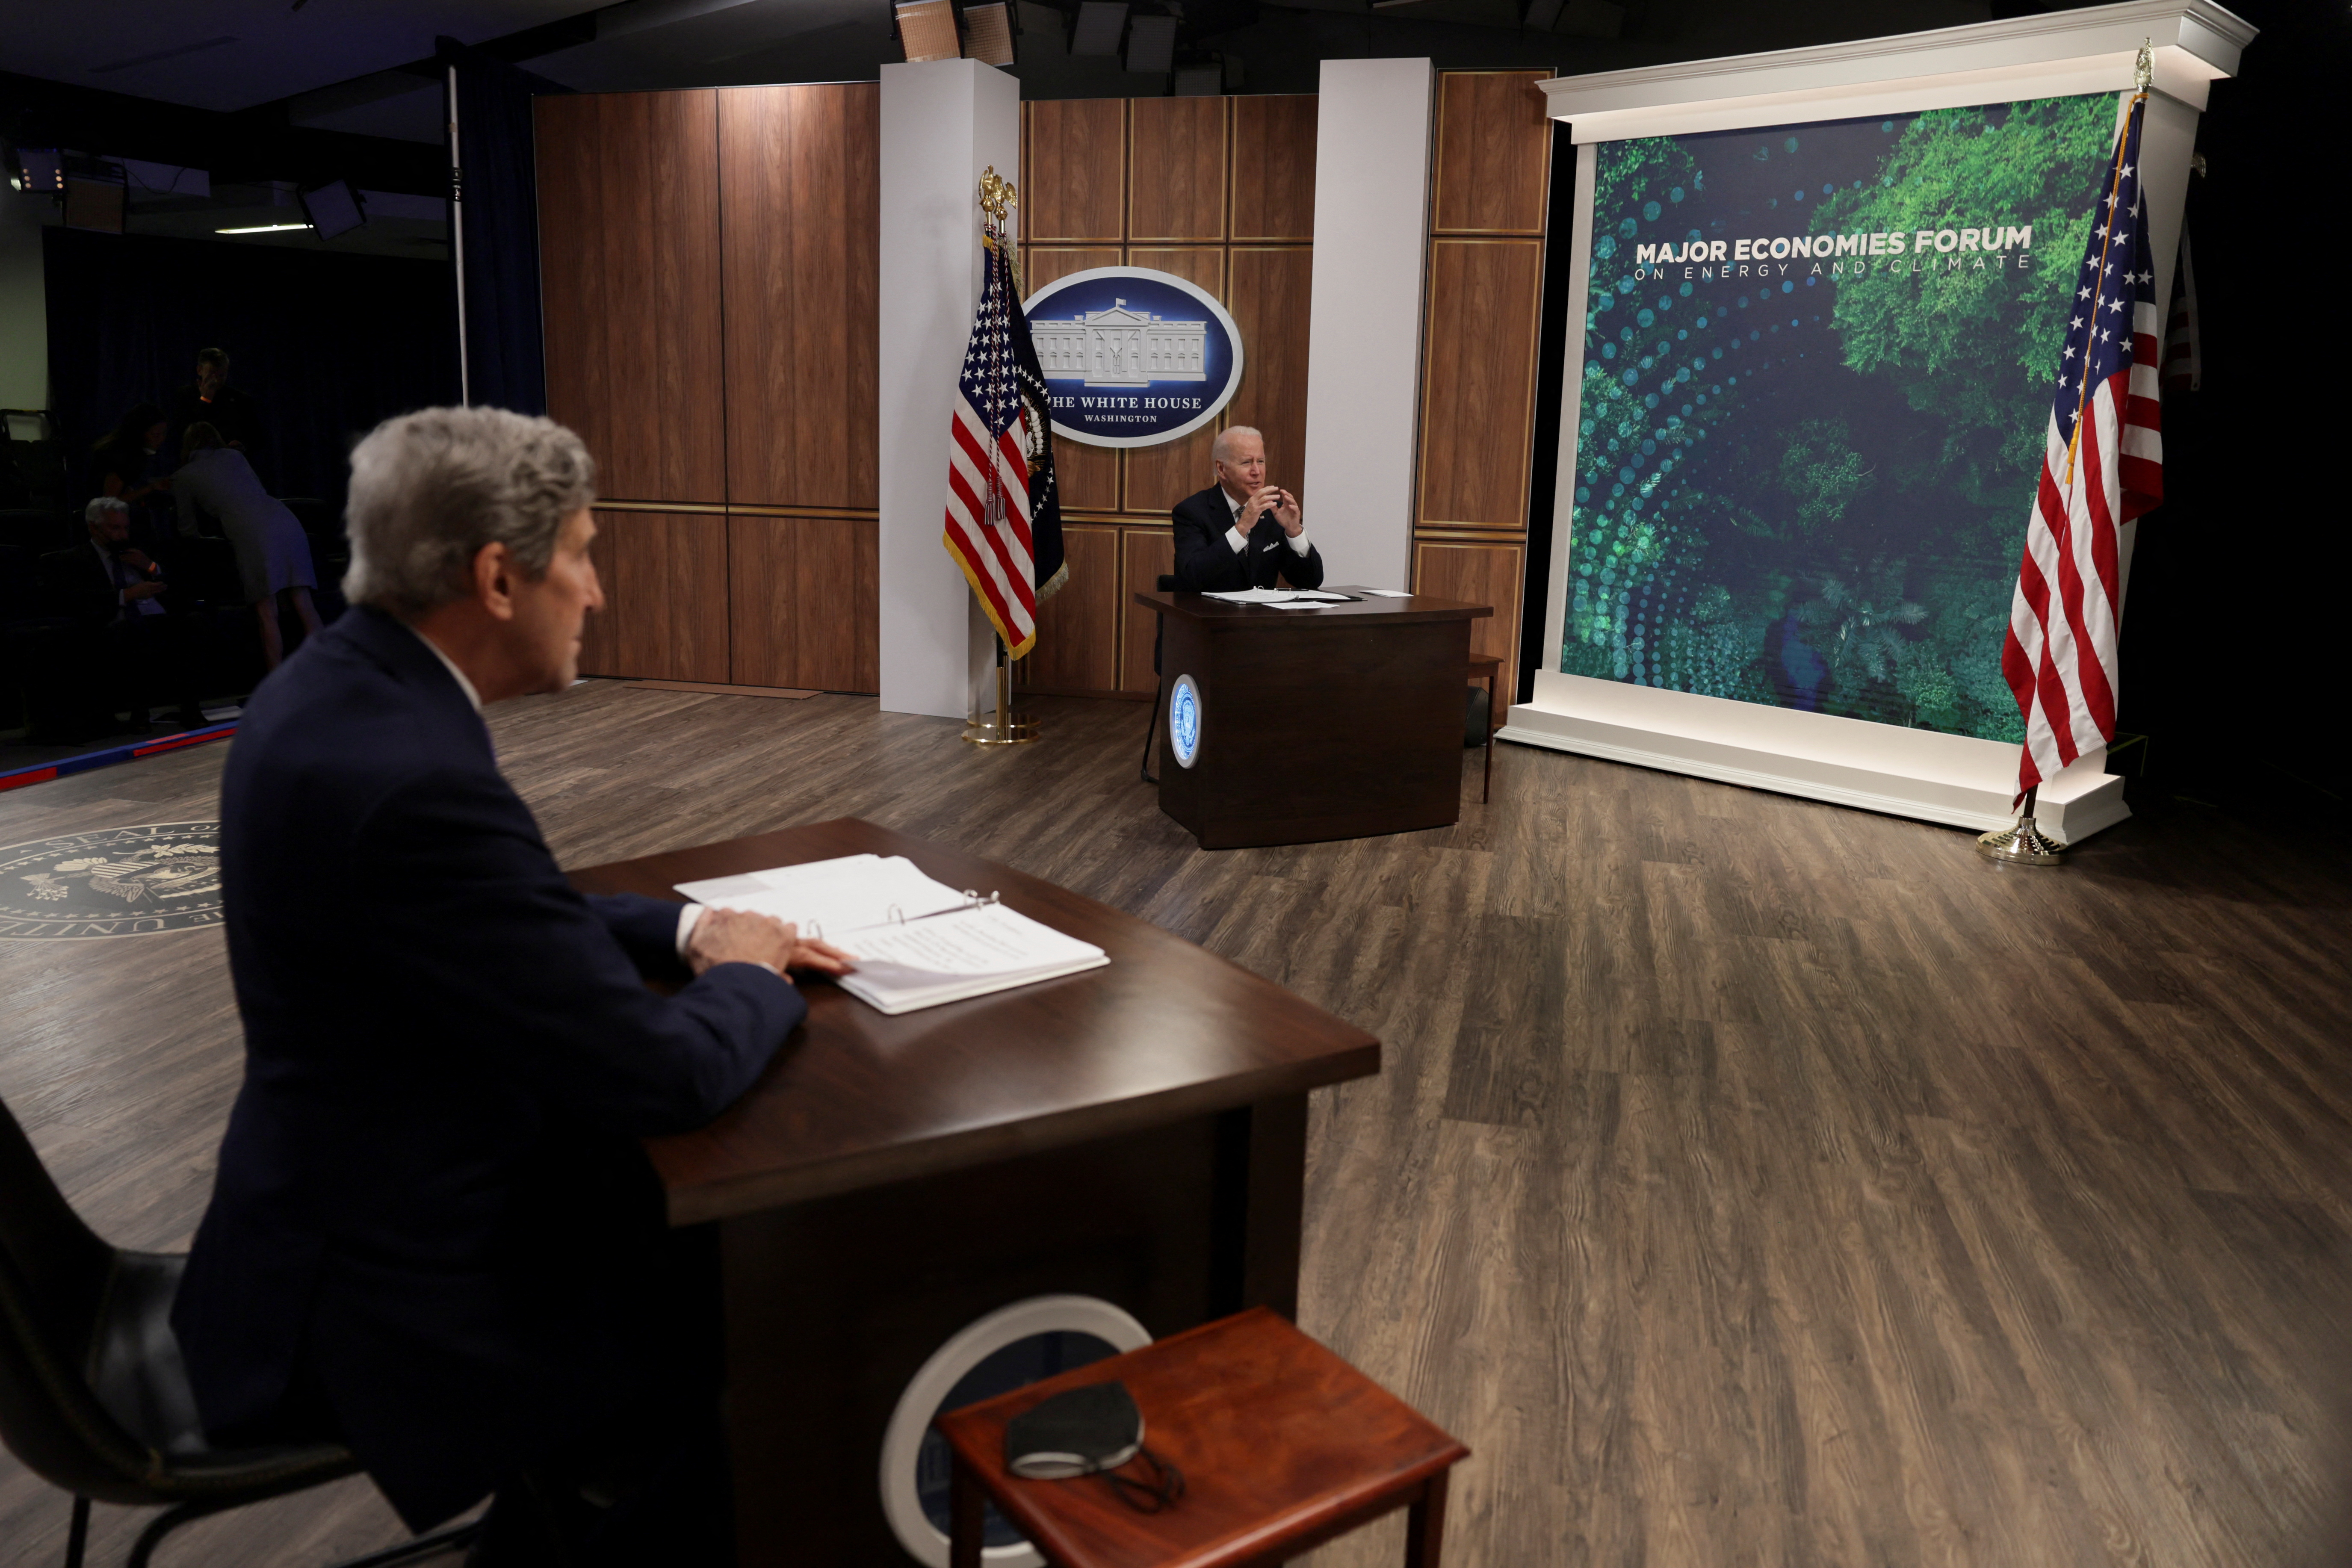 El presidente de EE.UU., Joe Biden, habla cerca del enviado presidencial especial para el clima, John Kerry, durante la celebración del Foro de las Principales Economías sobre Energía y Cambio Climático (MEF) en el auditorio South Court del complejo de la Casa Blanca en Washington, EE.UU., el 17 de junio de 2022. REUTERS/Evelyn Hockstein